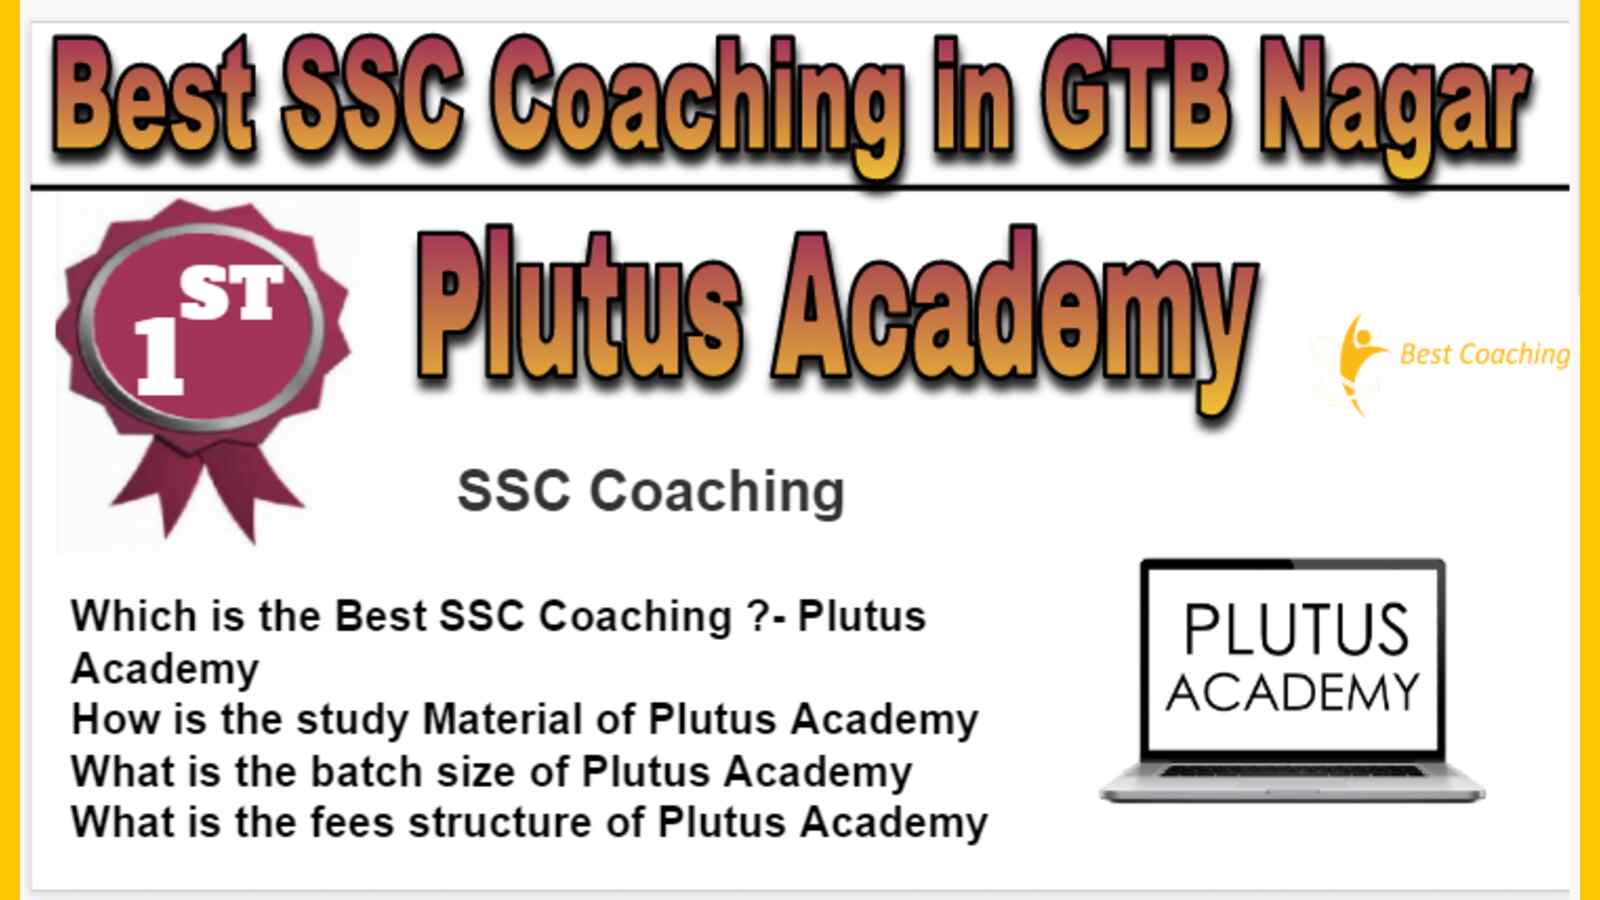 Rank 1 Best SSC Coaching in GTB Nagar